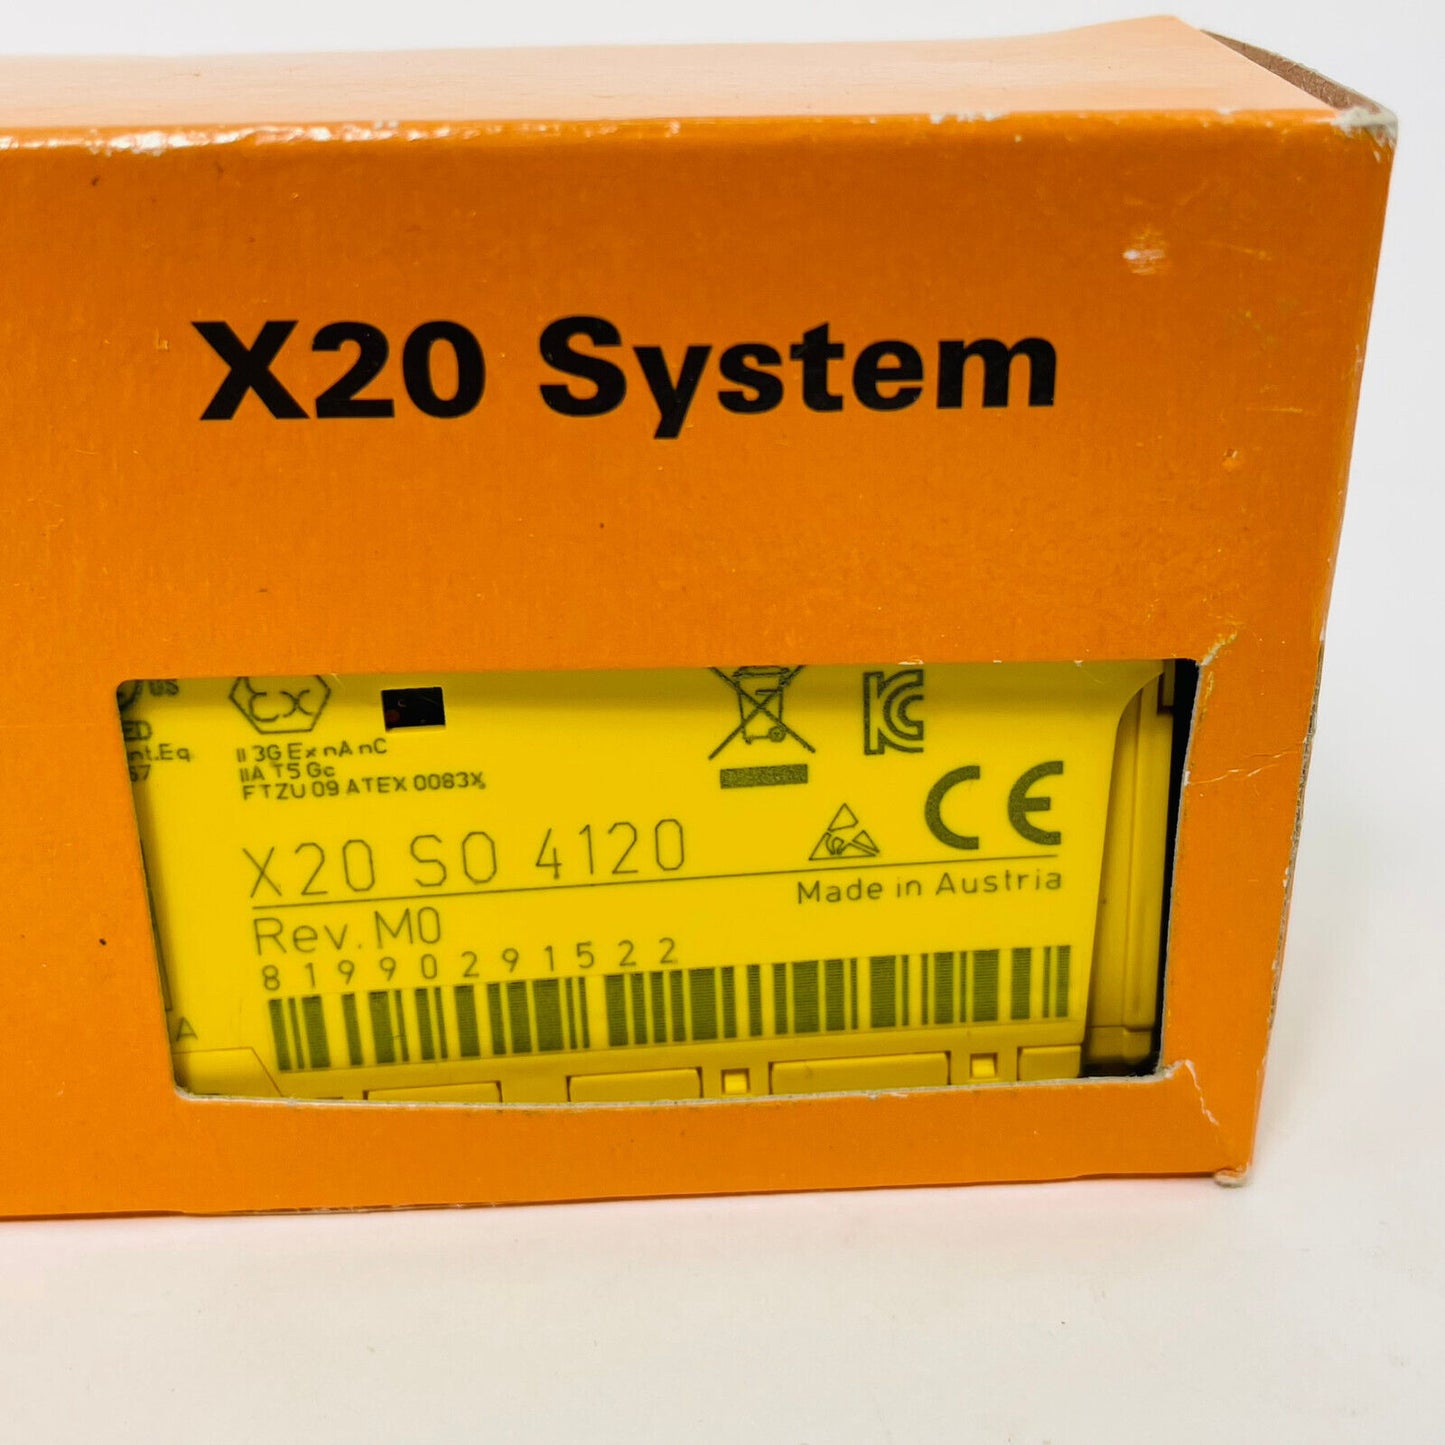 New B&R X20SO4120 / X20 SO 4120  PLC Module